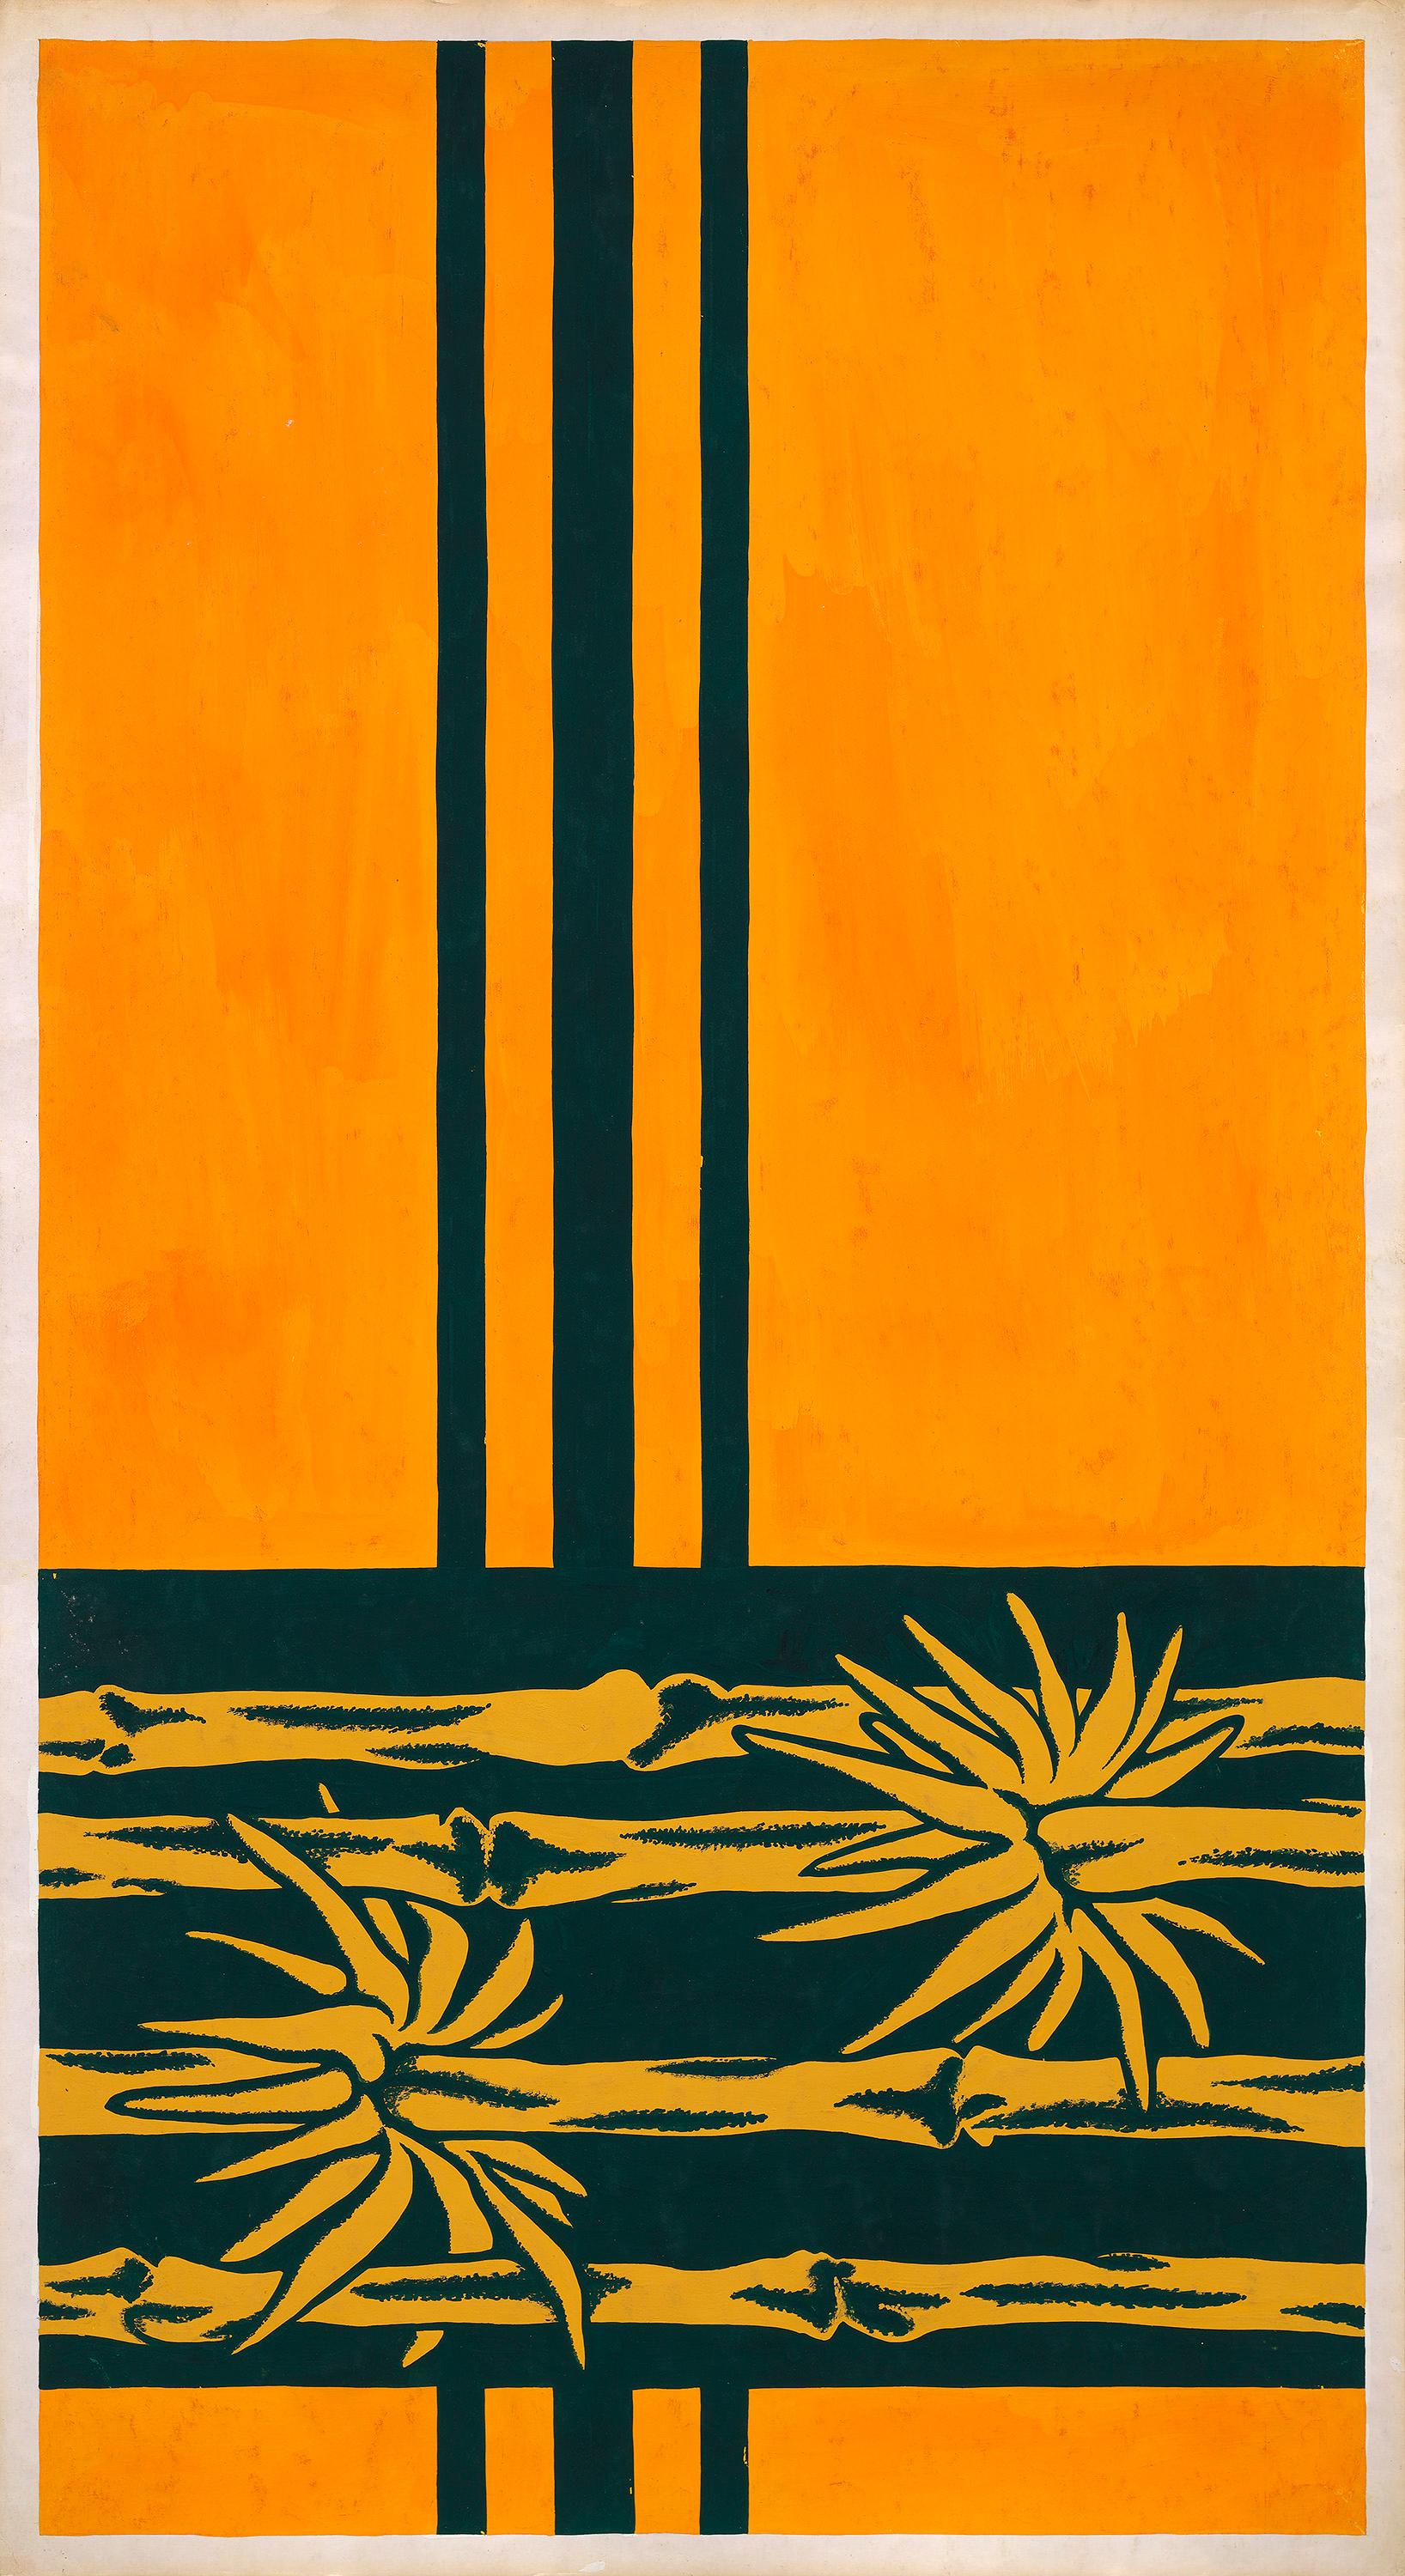 Still-Life Unknown - Conception textile originale des années 70 peinte à la main à la gouache, couleur orange et verte sur papier